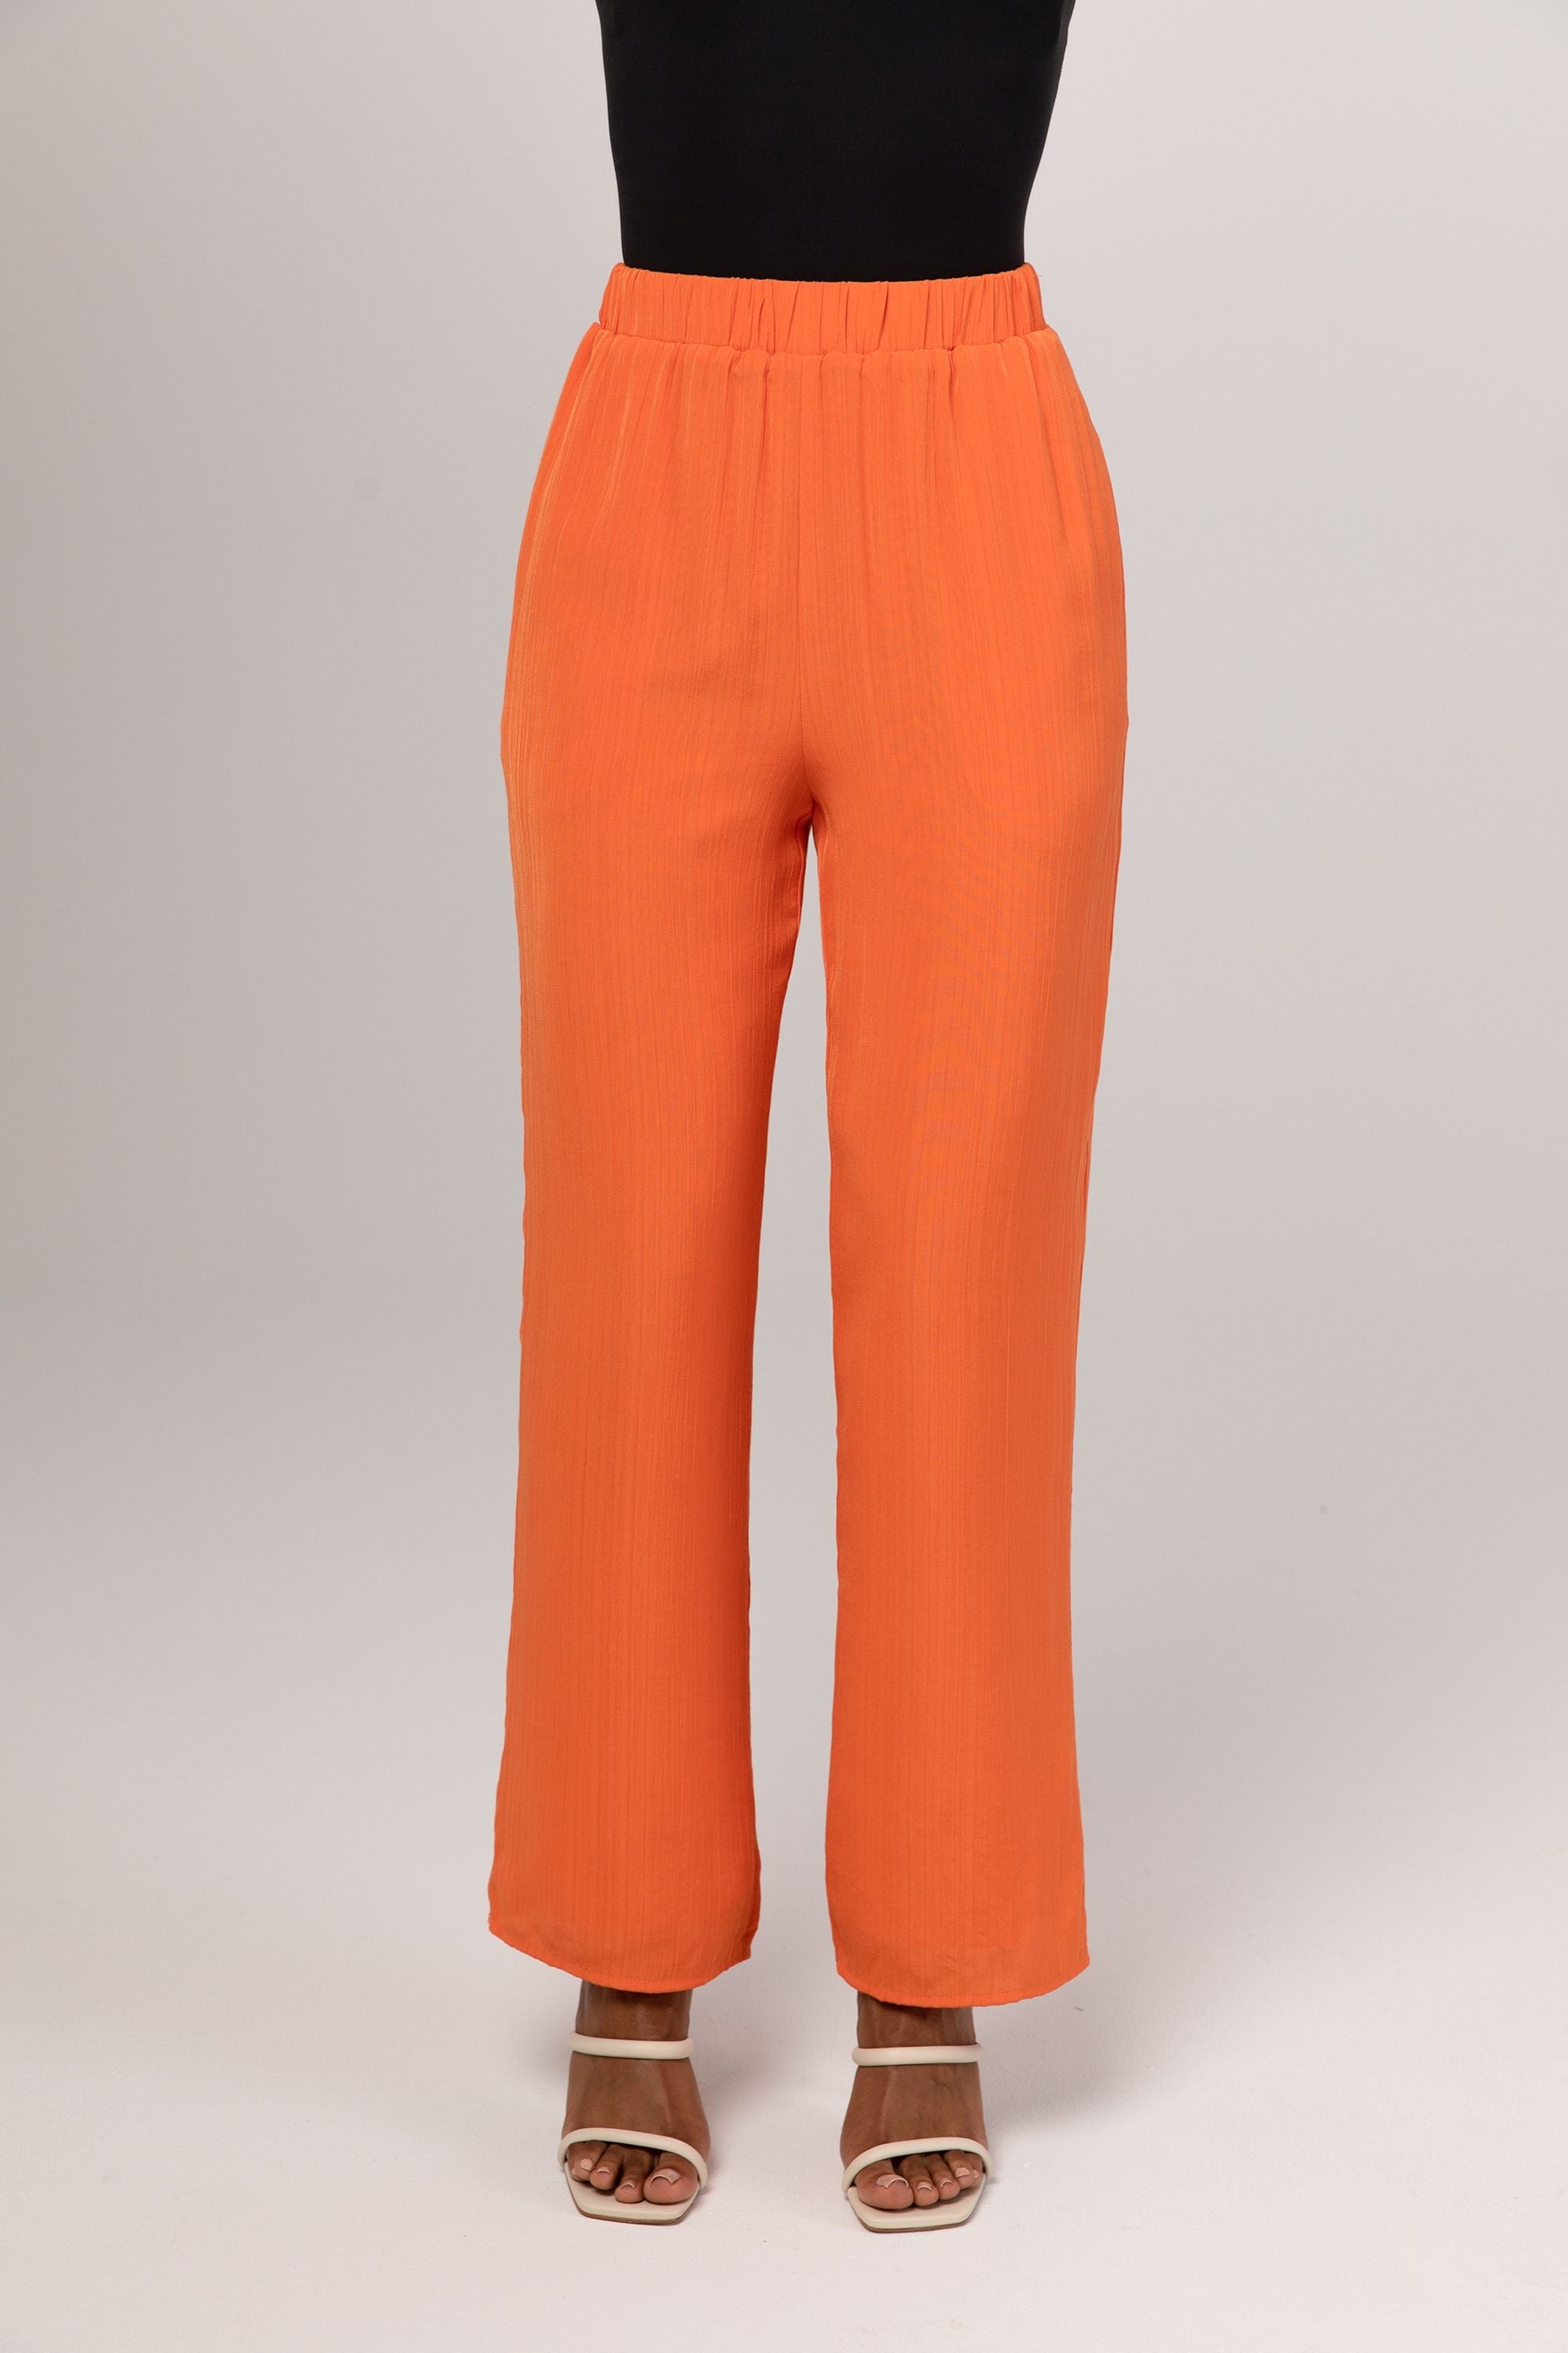 Nashwa Textured Rayon Wide Leg Pants - Papaya